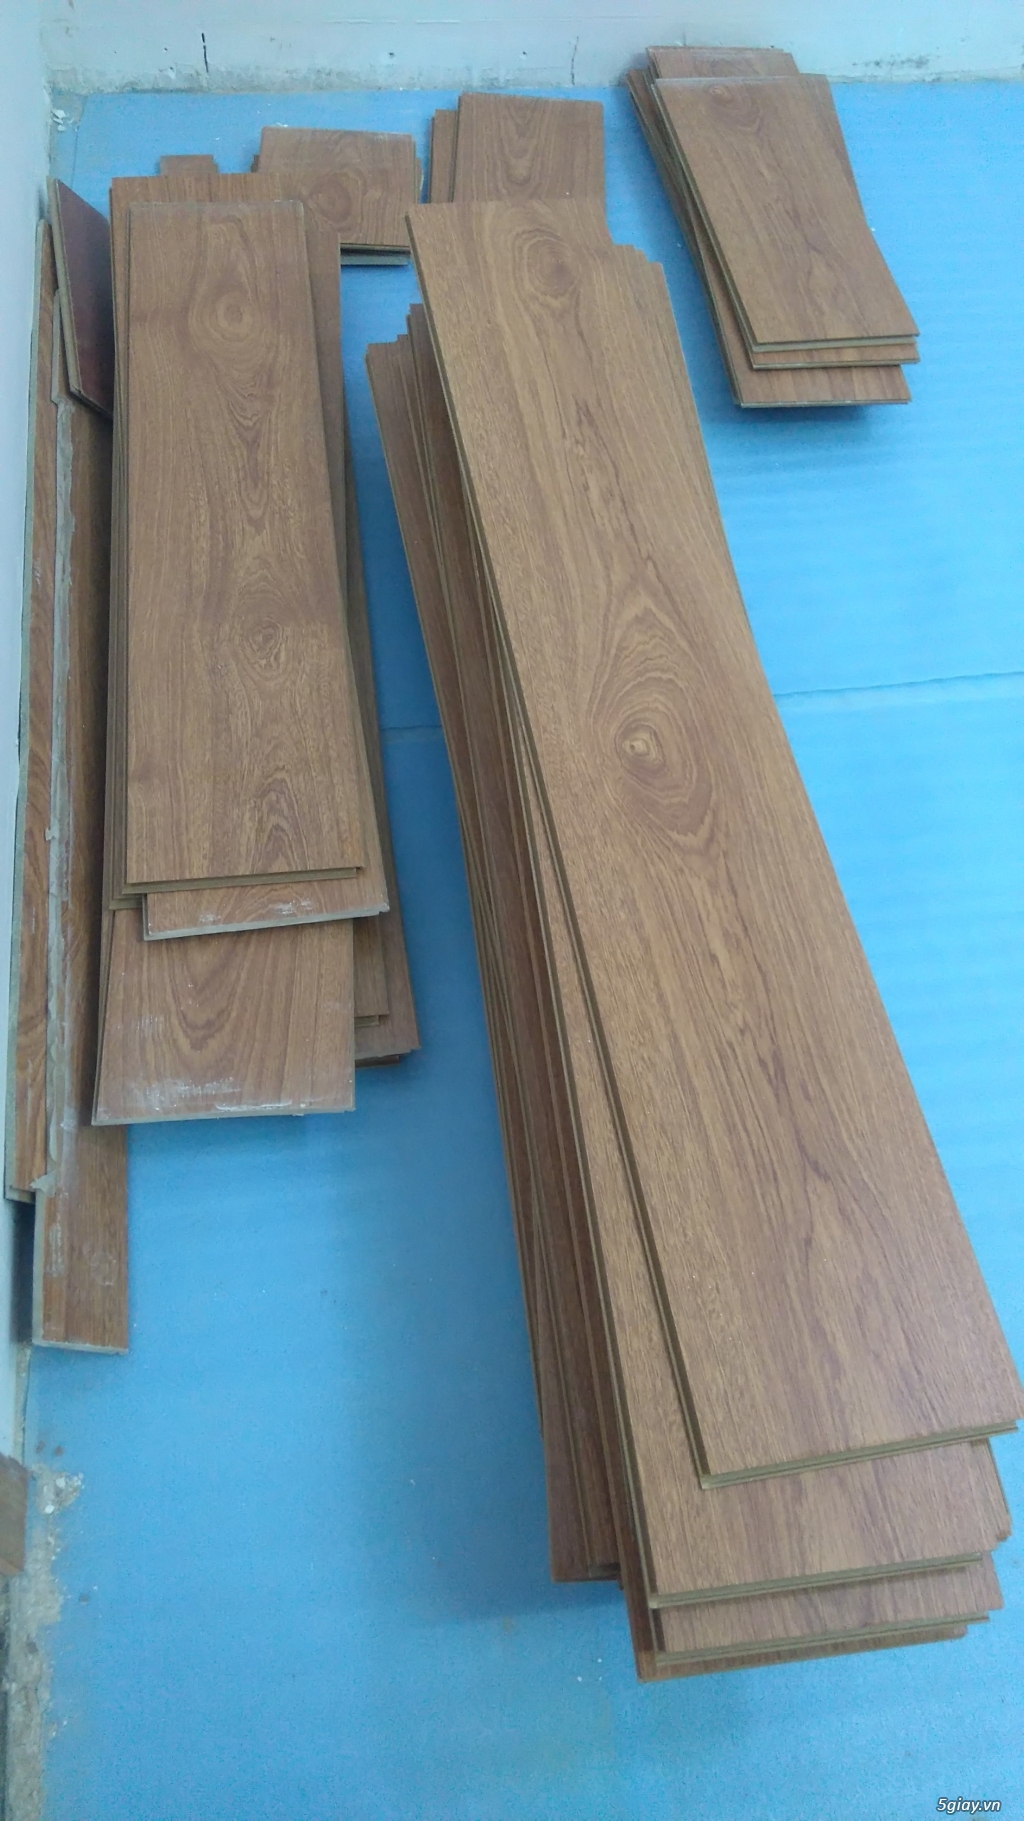 Thanh lý sàn gỗ rẻ - 4